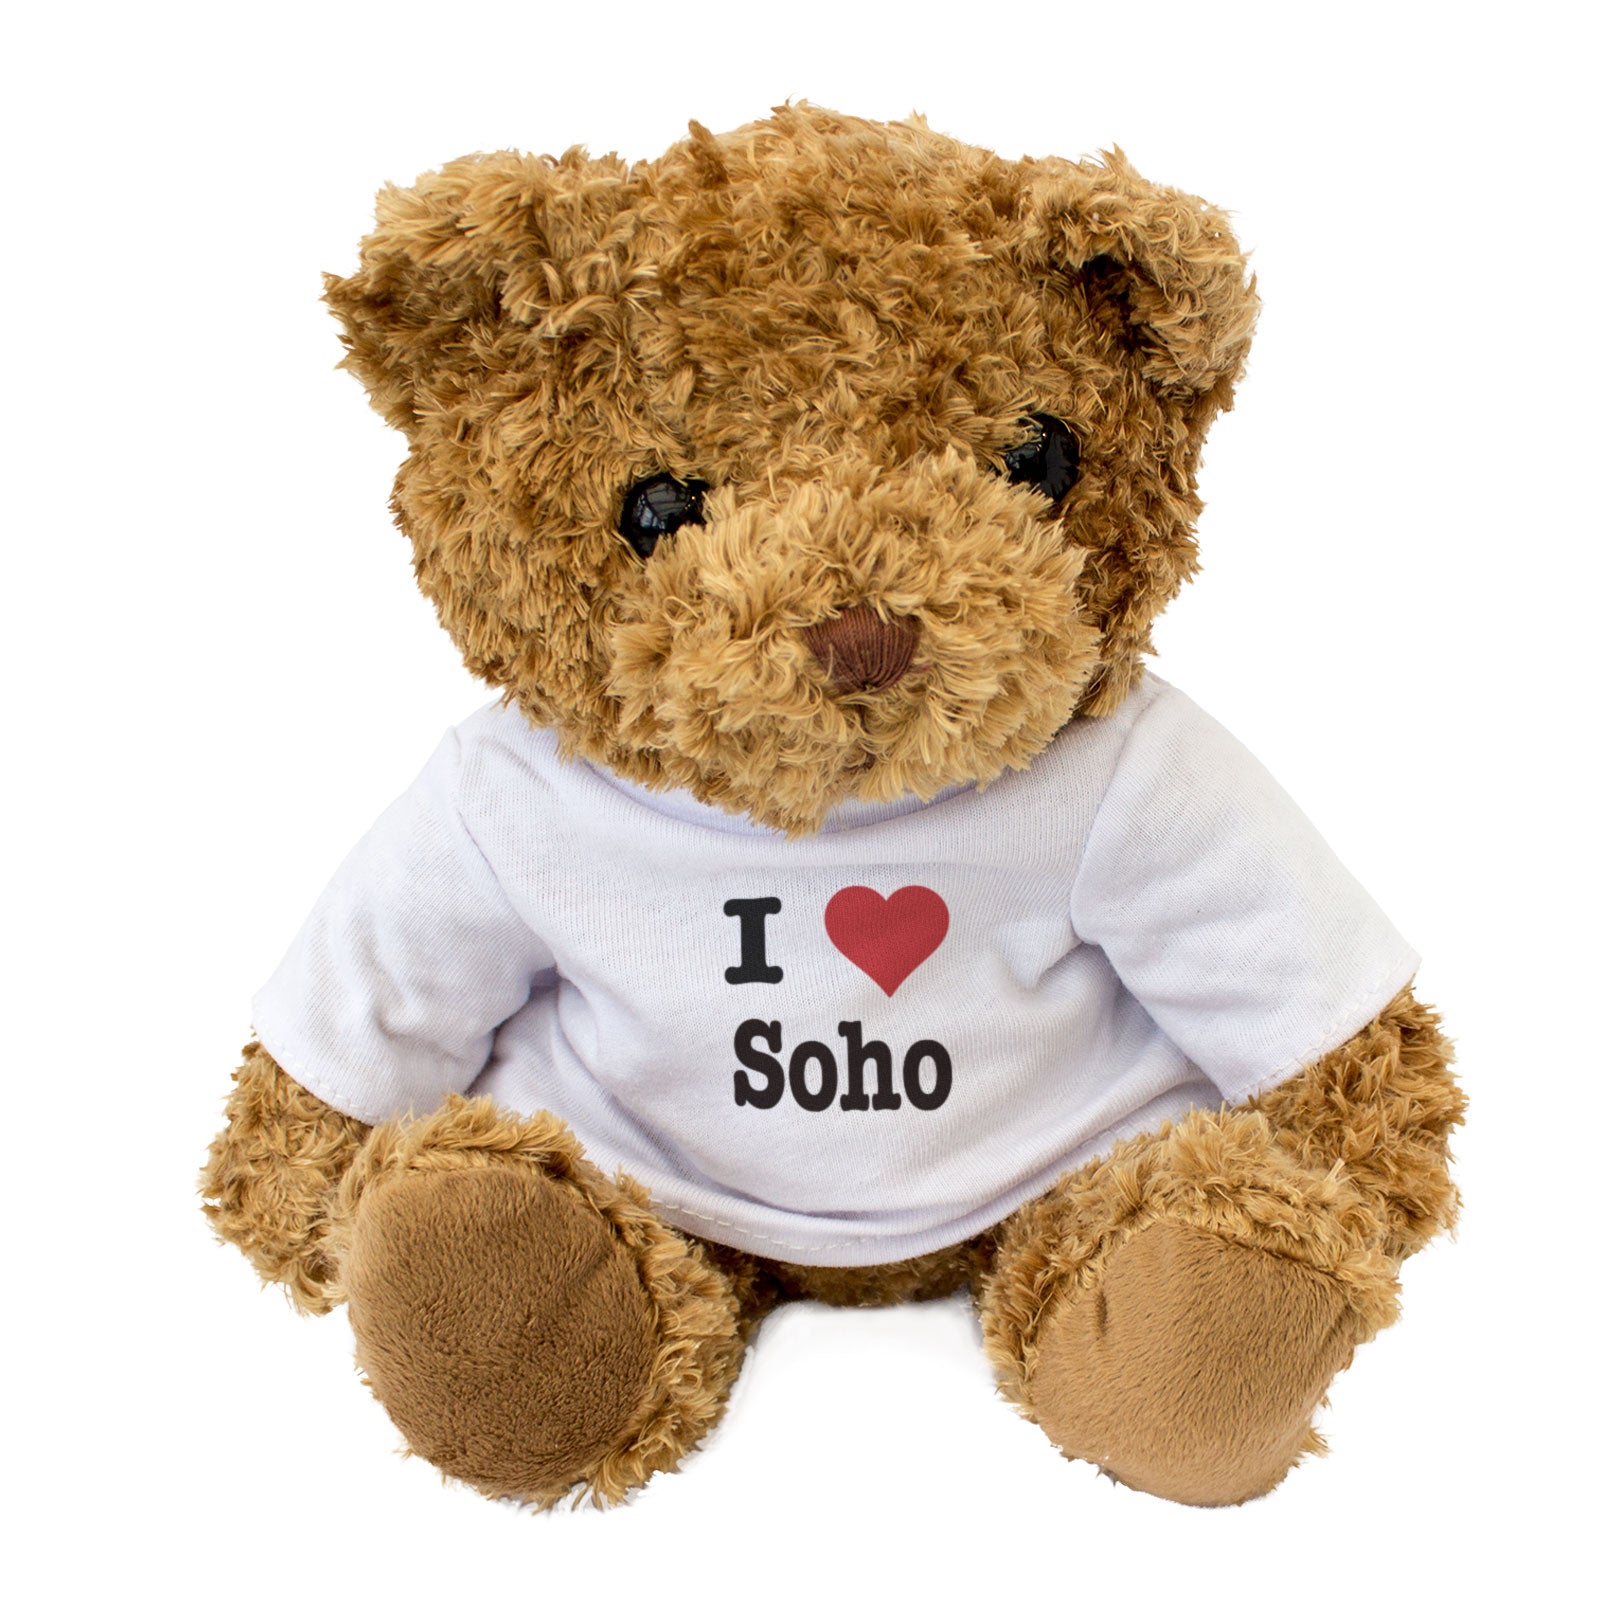 I Love Soho - Teddy Bear